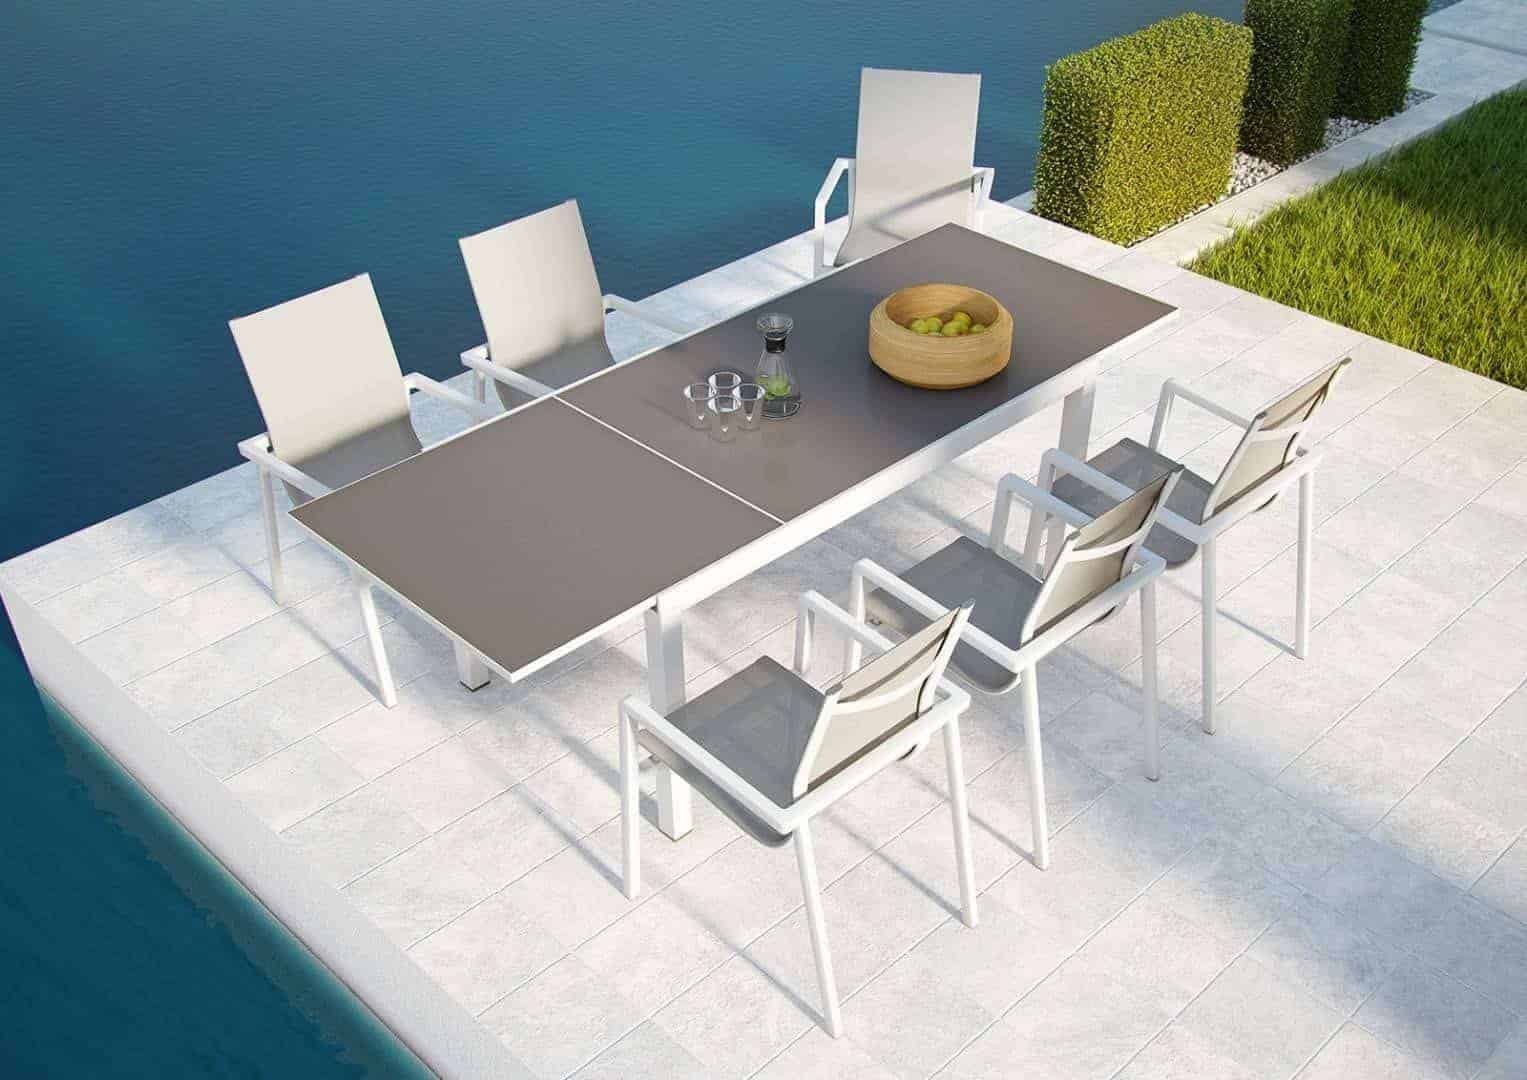 Stół ogrodowy TOLEDO biały